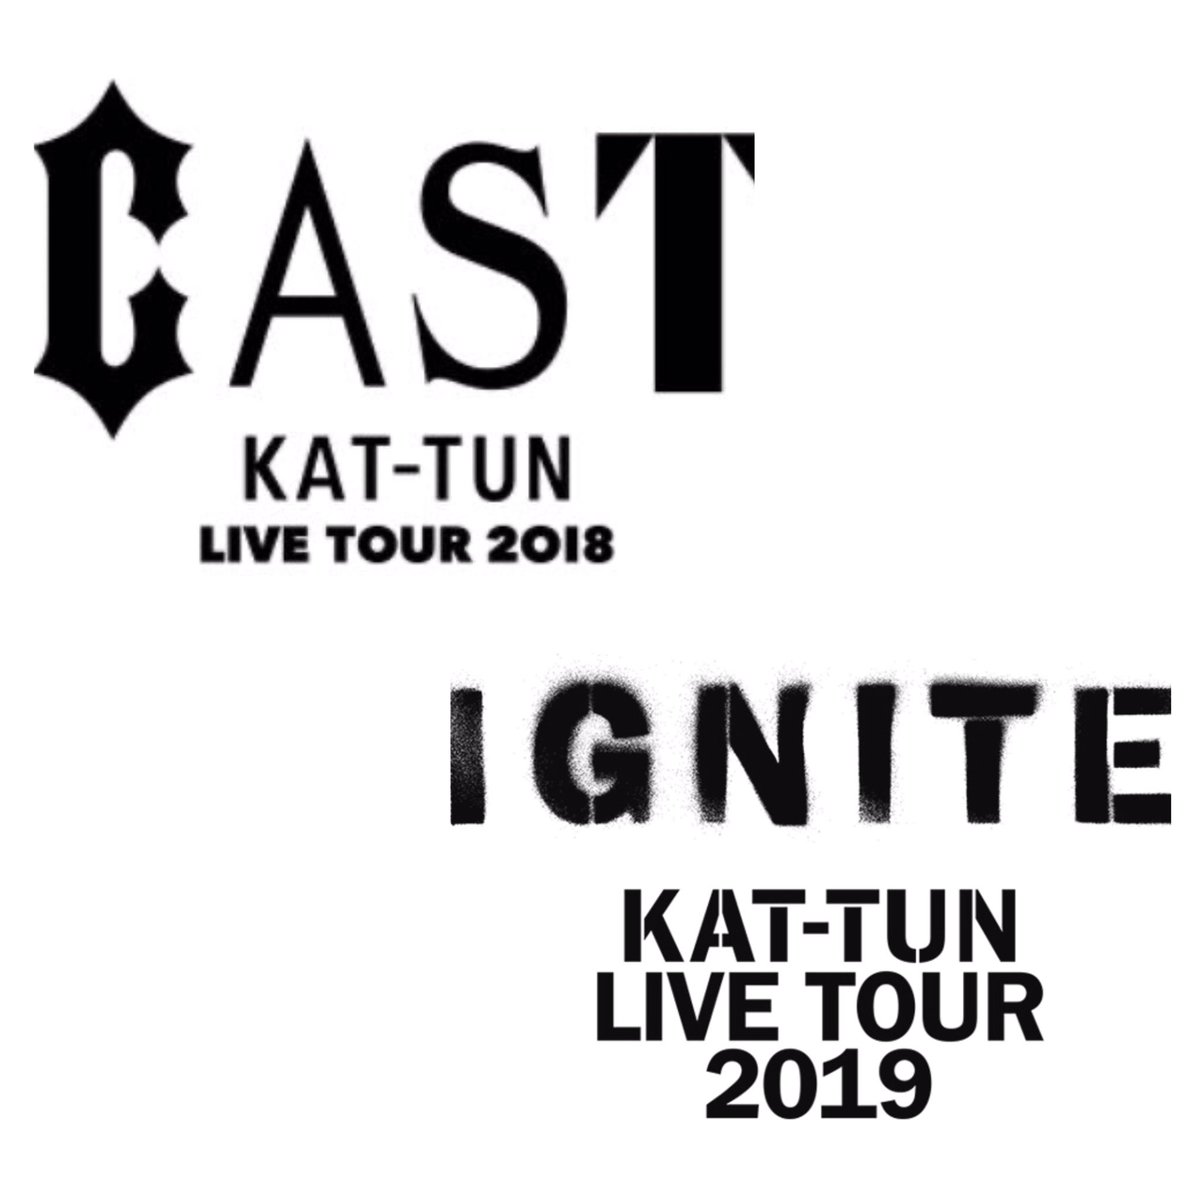 ユキ Pa Twitter Kat Tunコンサート ツアー ロゴ歴 16 16年 Kat Tun 10th Anniversary Live Tour 10ks 18年 Kat Tun Live 18 Union 18年 Kat Tun Live Tour 18 Cast 19年 Kat Tun Live Tour 19 Ignite 21年 15th Anniversary